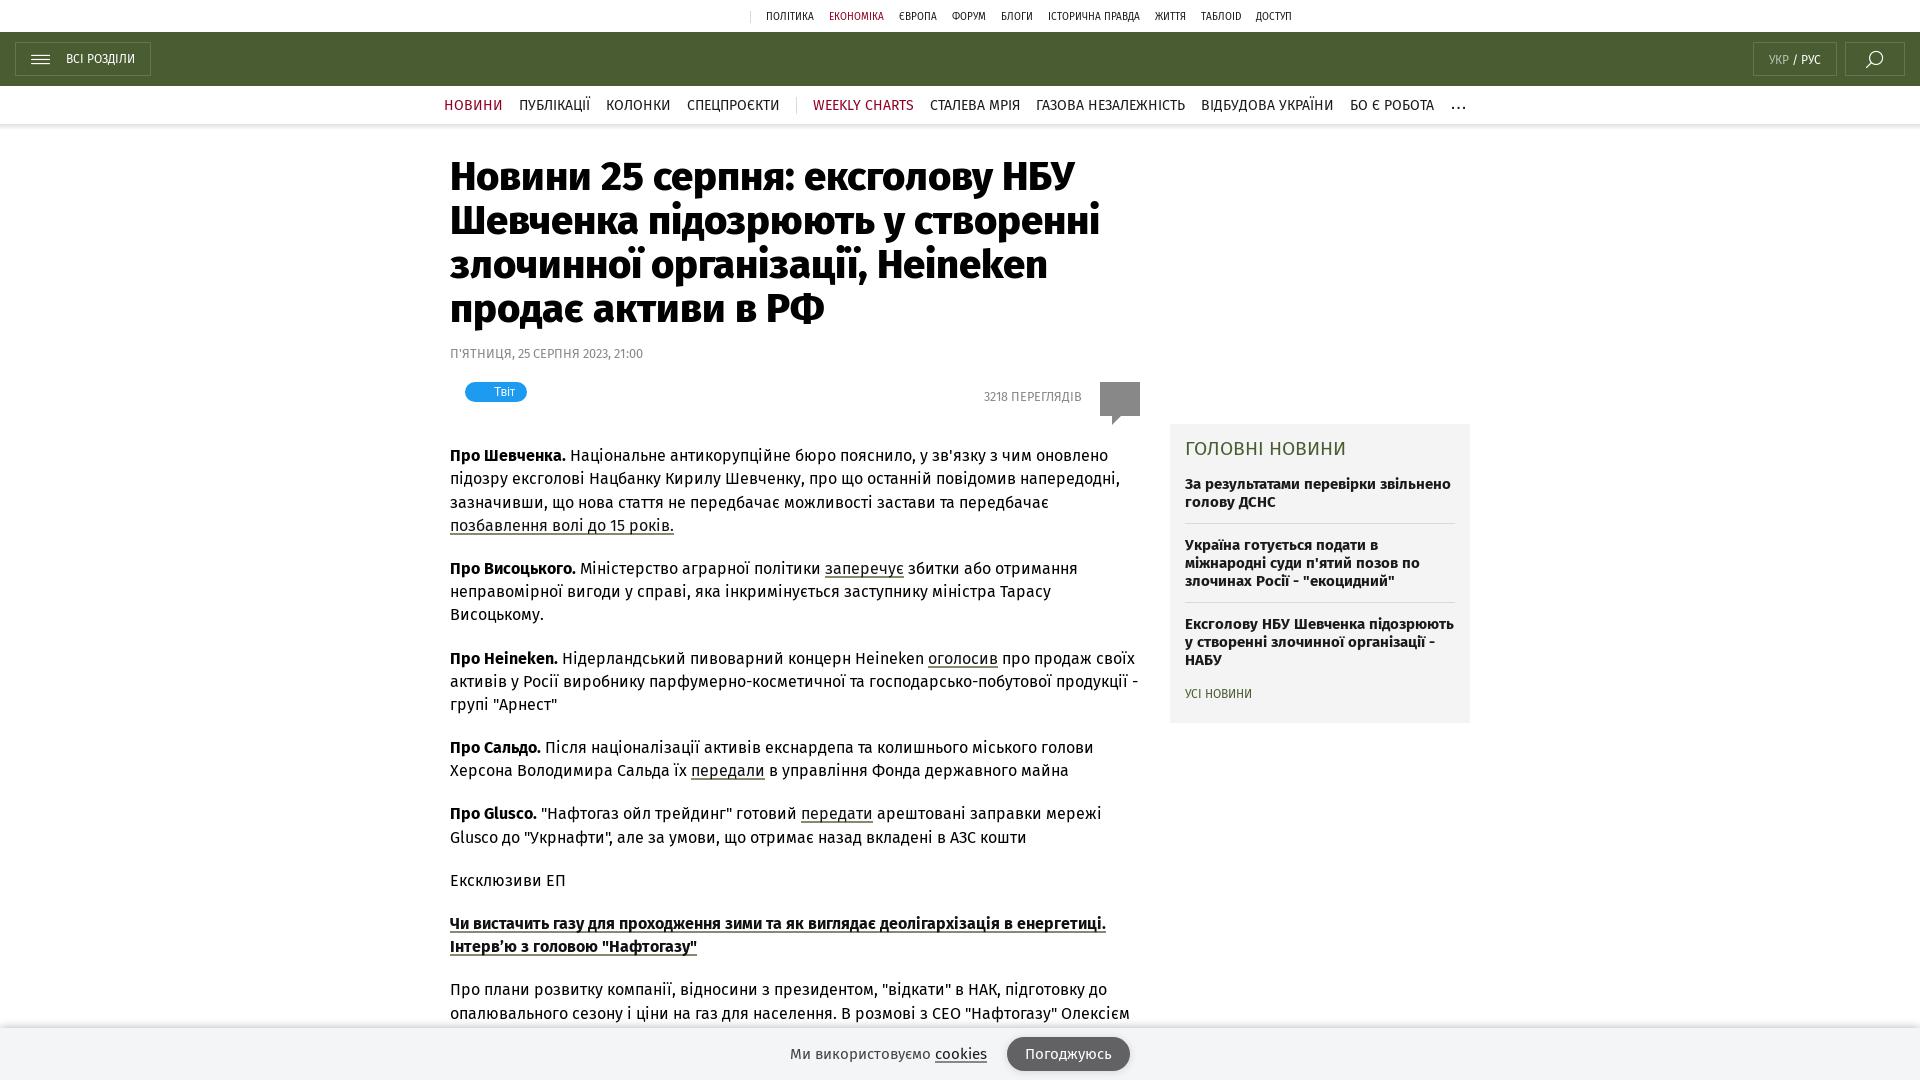 Wiadomość z 25 sierpnia: Były prezes Narodowego Banku Ukrainy Szewczenko jest podejrzany o utworzenie organizacji przestępczej;  Heineken sprzedaje swoje aktywa w Rosji |  bota messengera